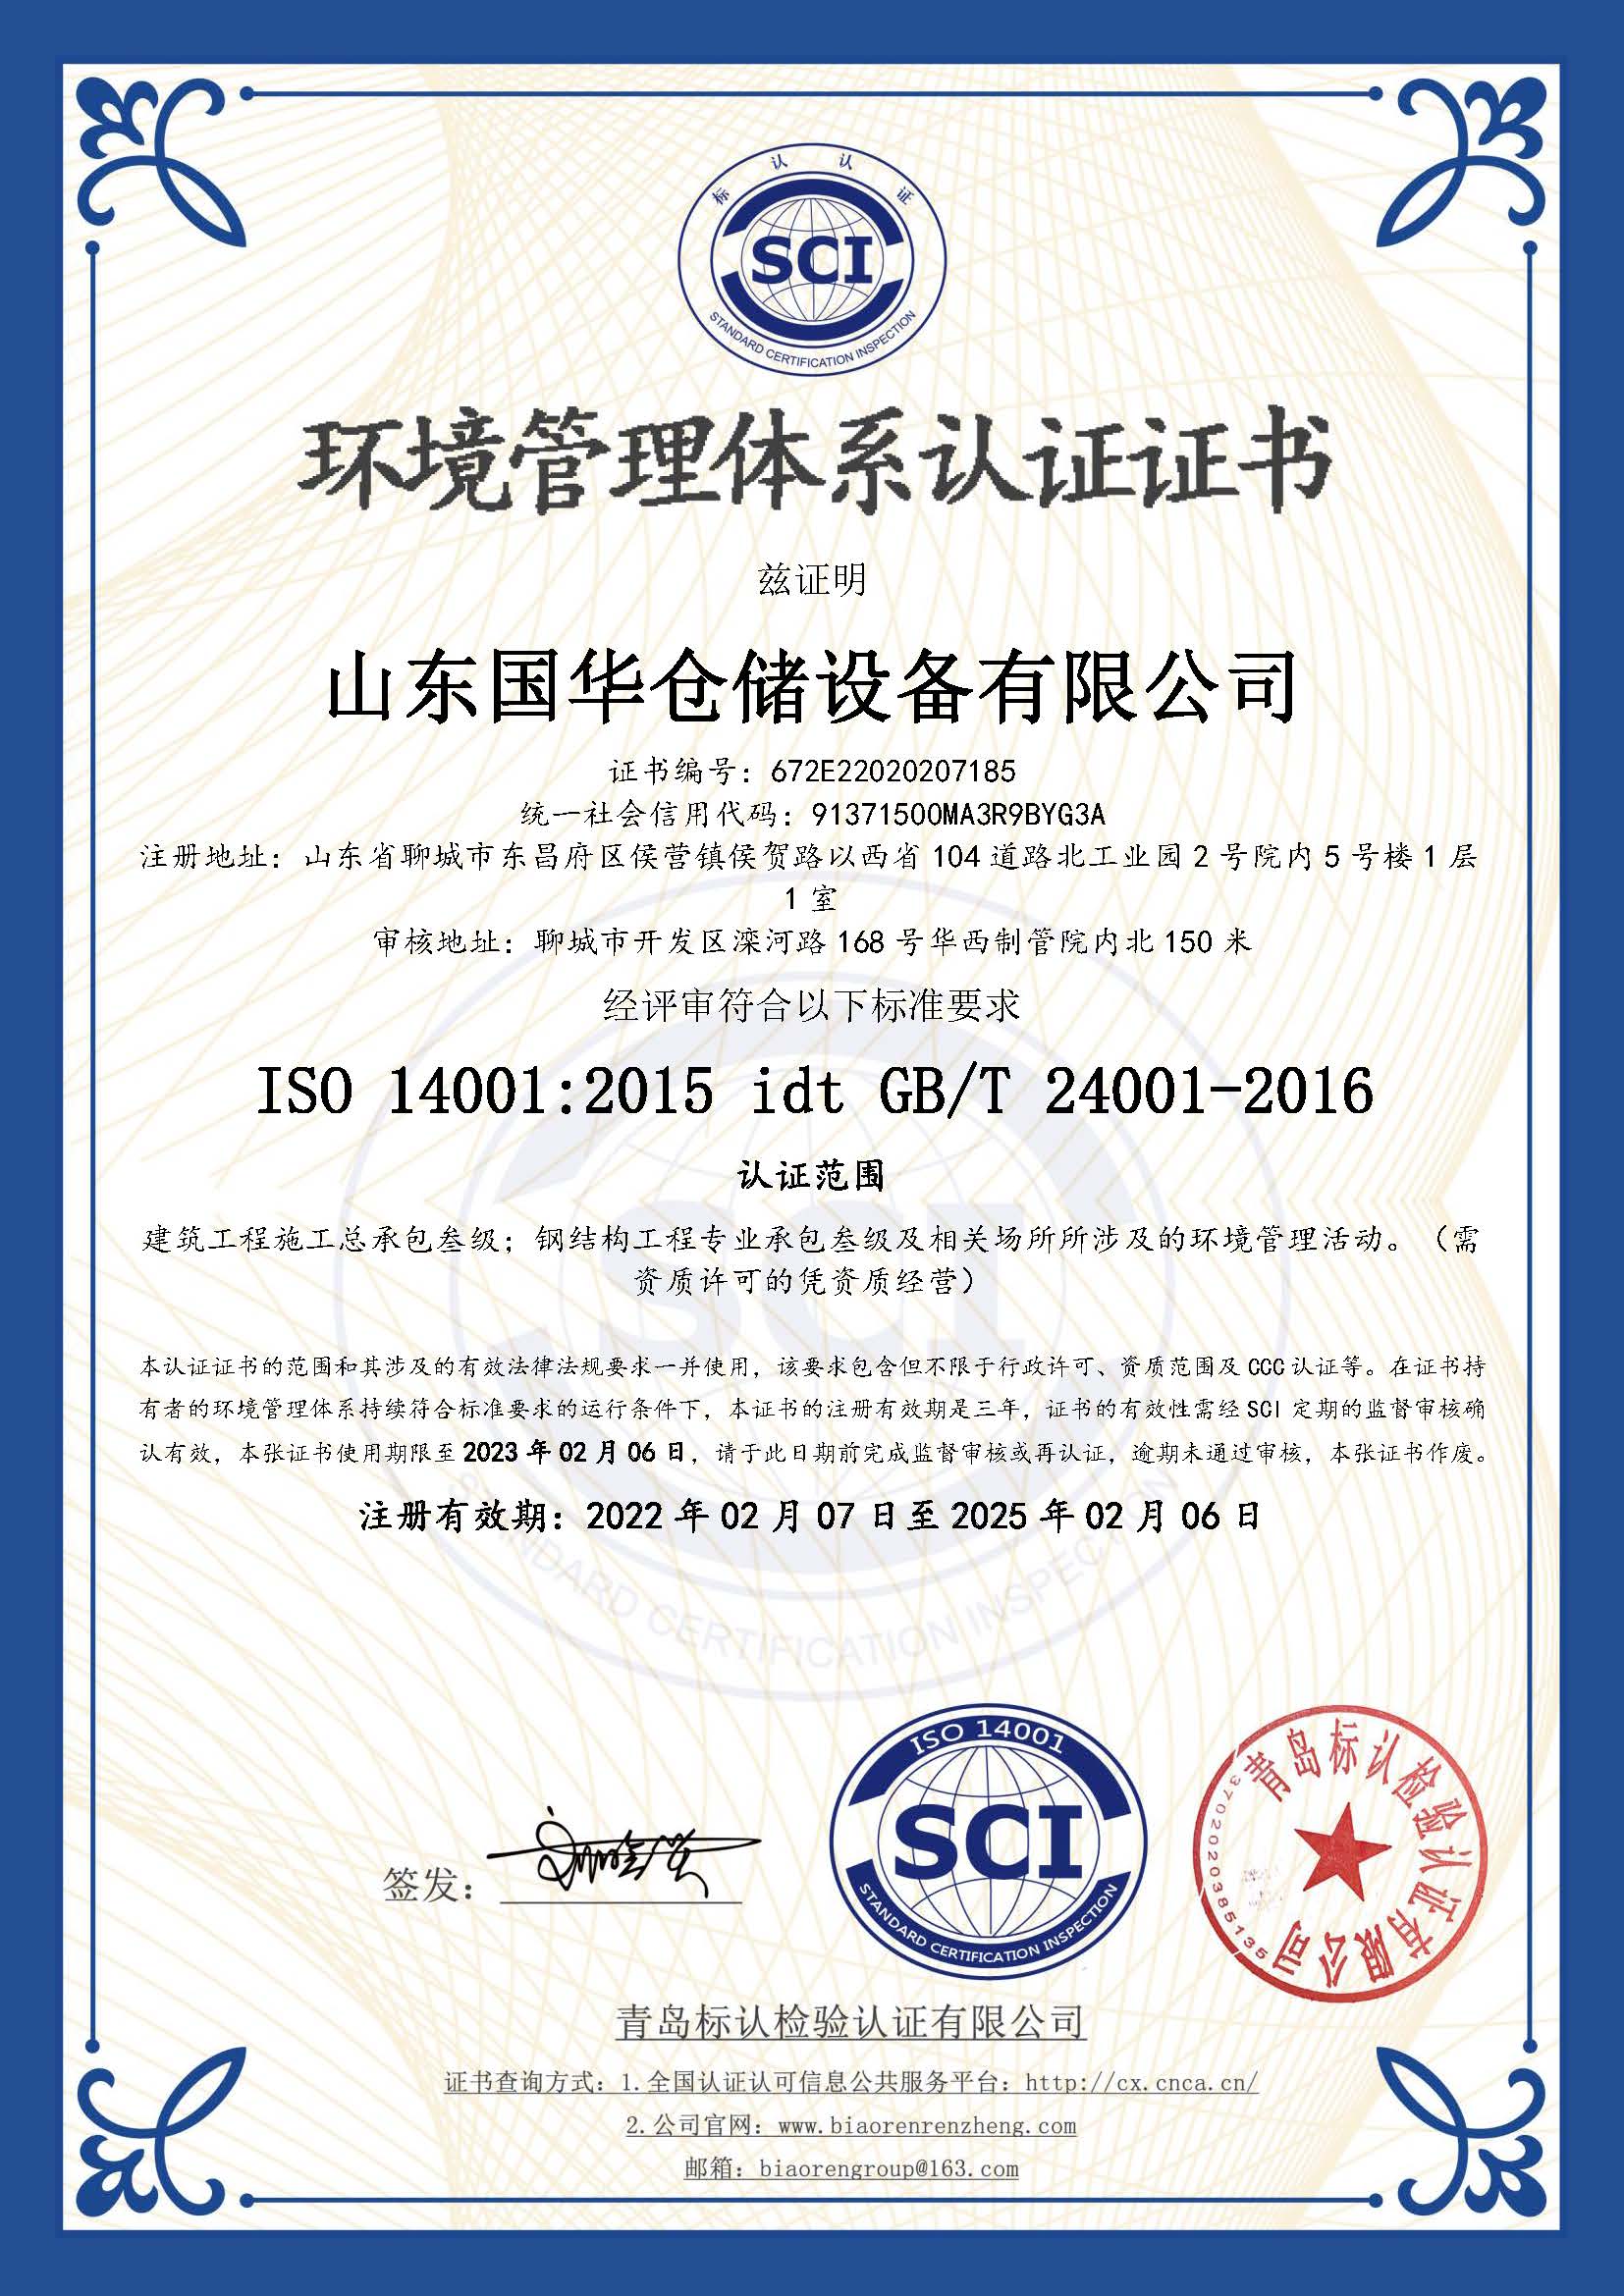 荆州钢板仓环境管理体系认证证书